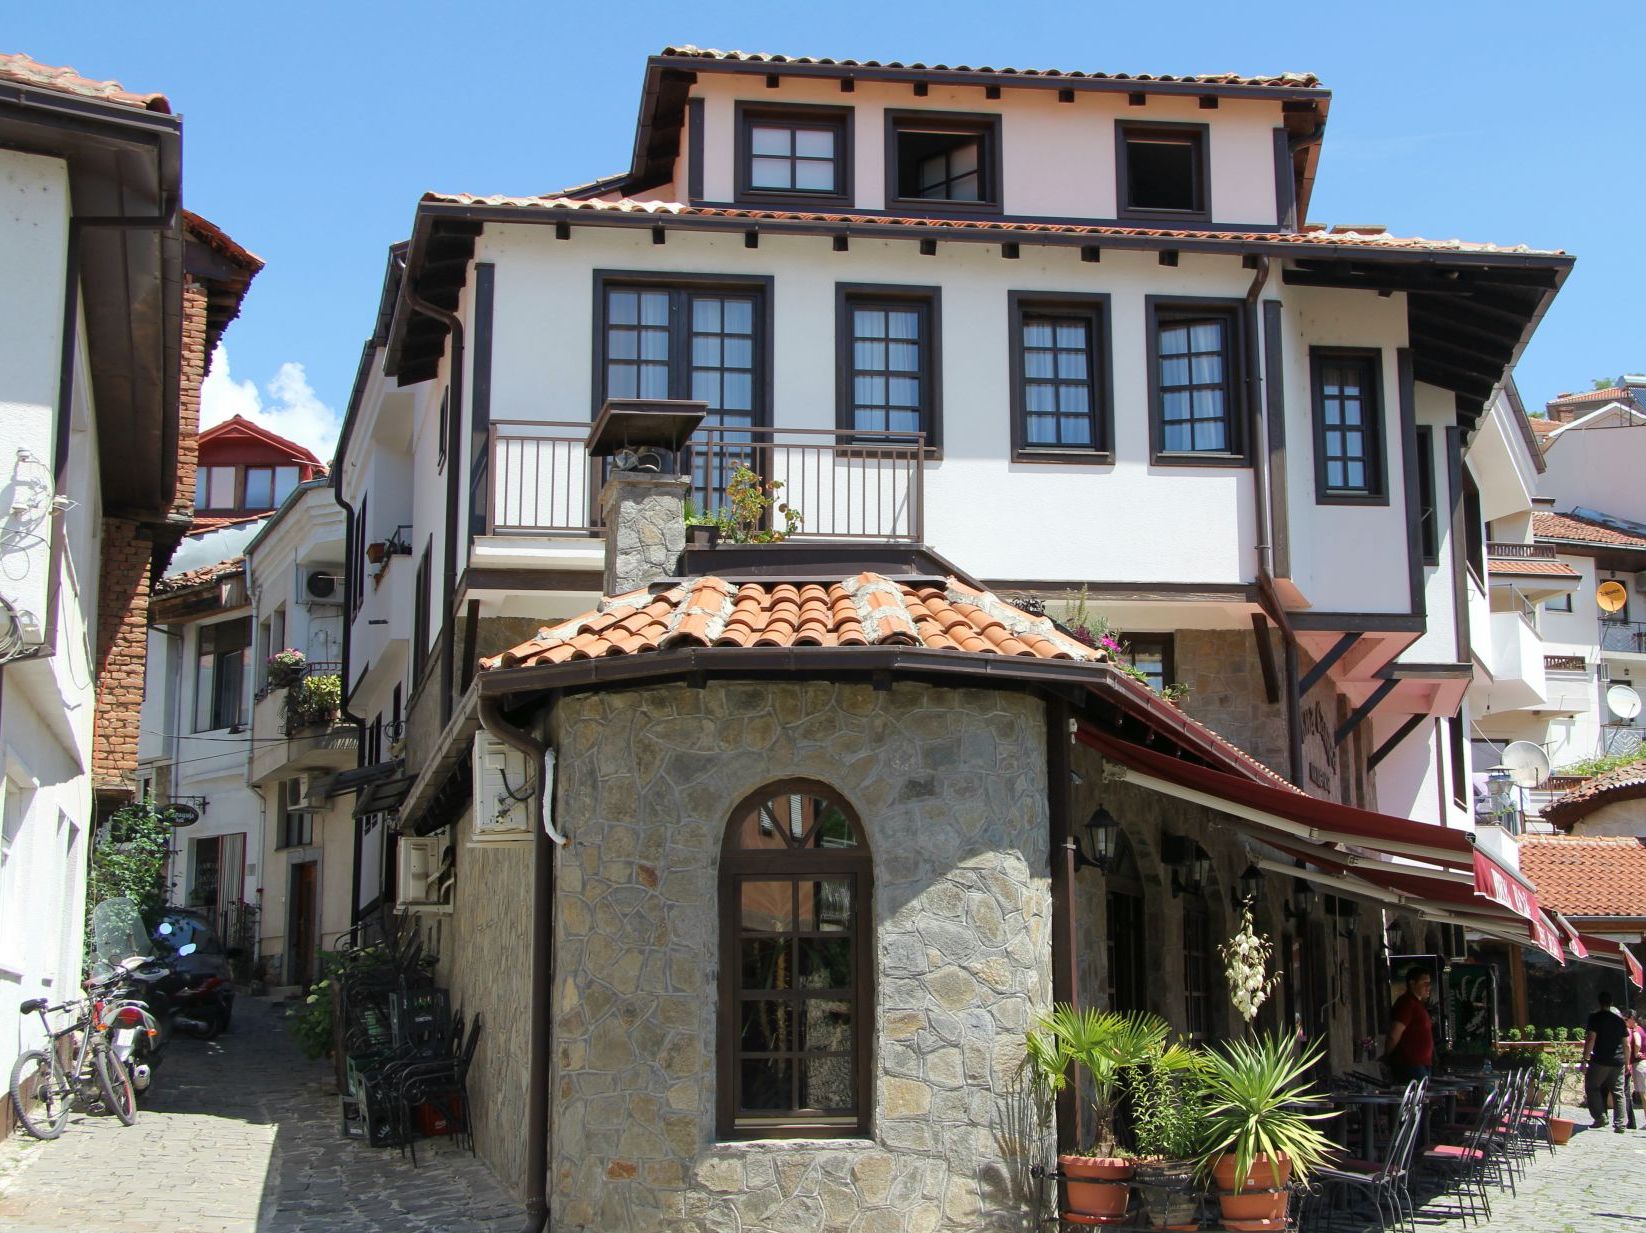 Day 4 Ohrid – Skopje